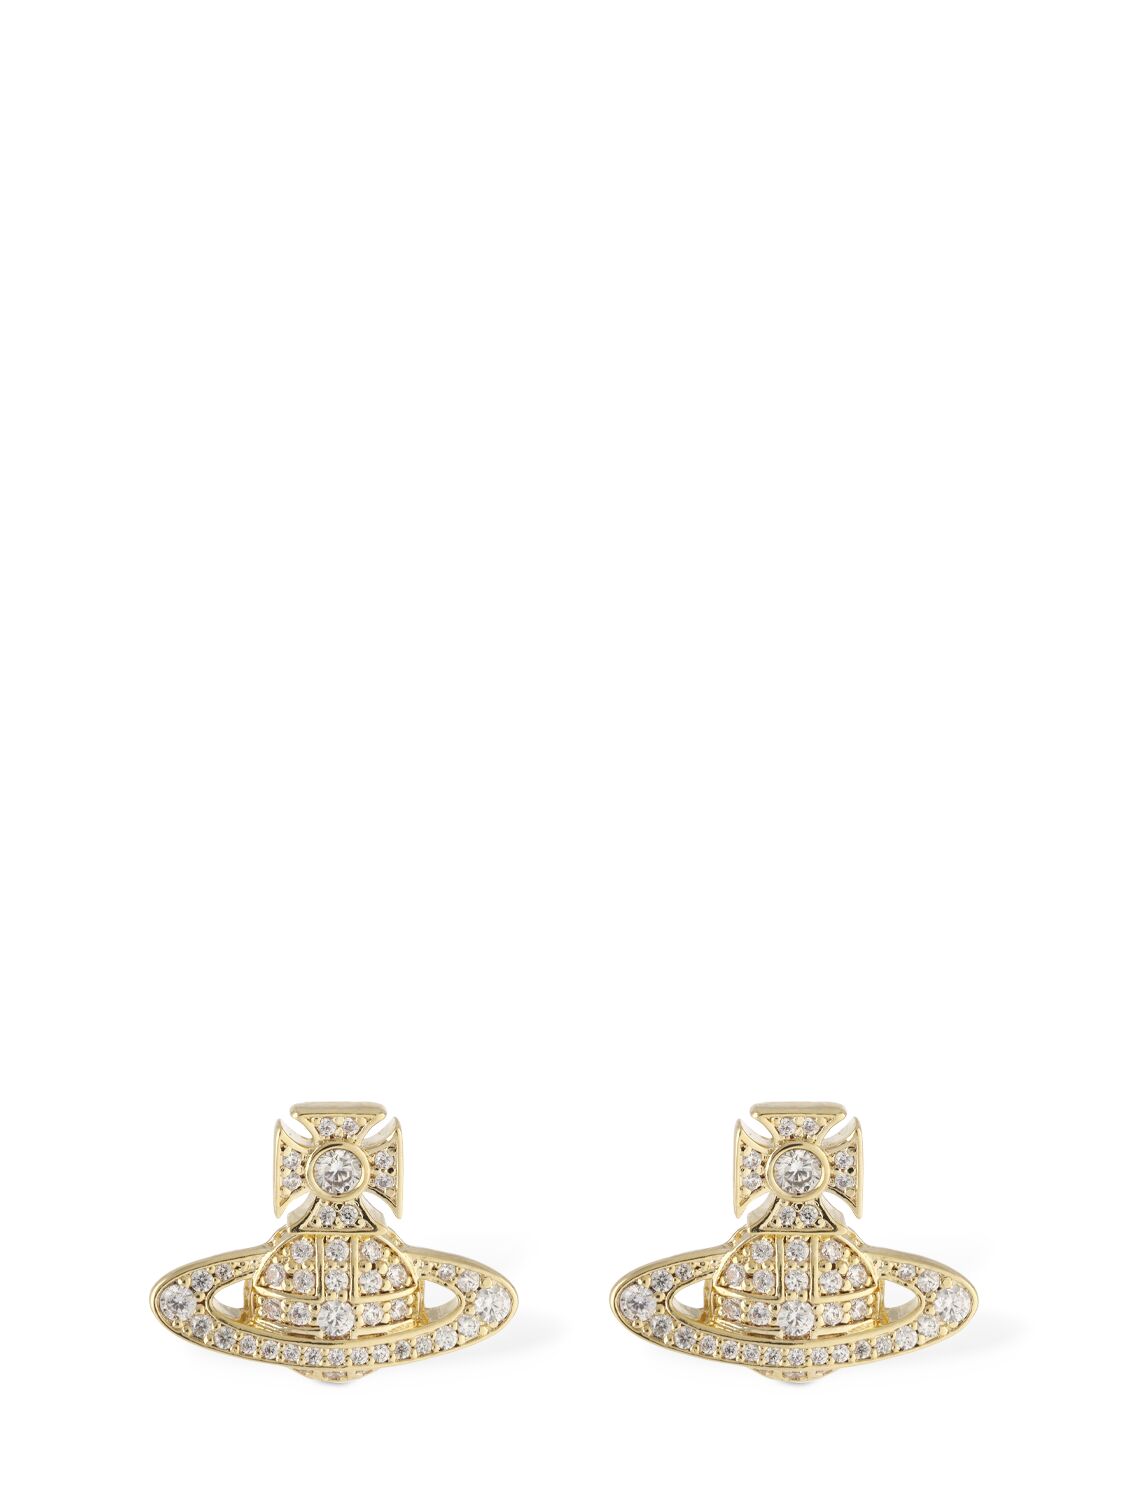 Vivienne Westwood Carmela Bas Relief Stud Earrings In Gold,crystal